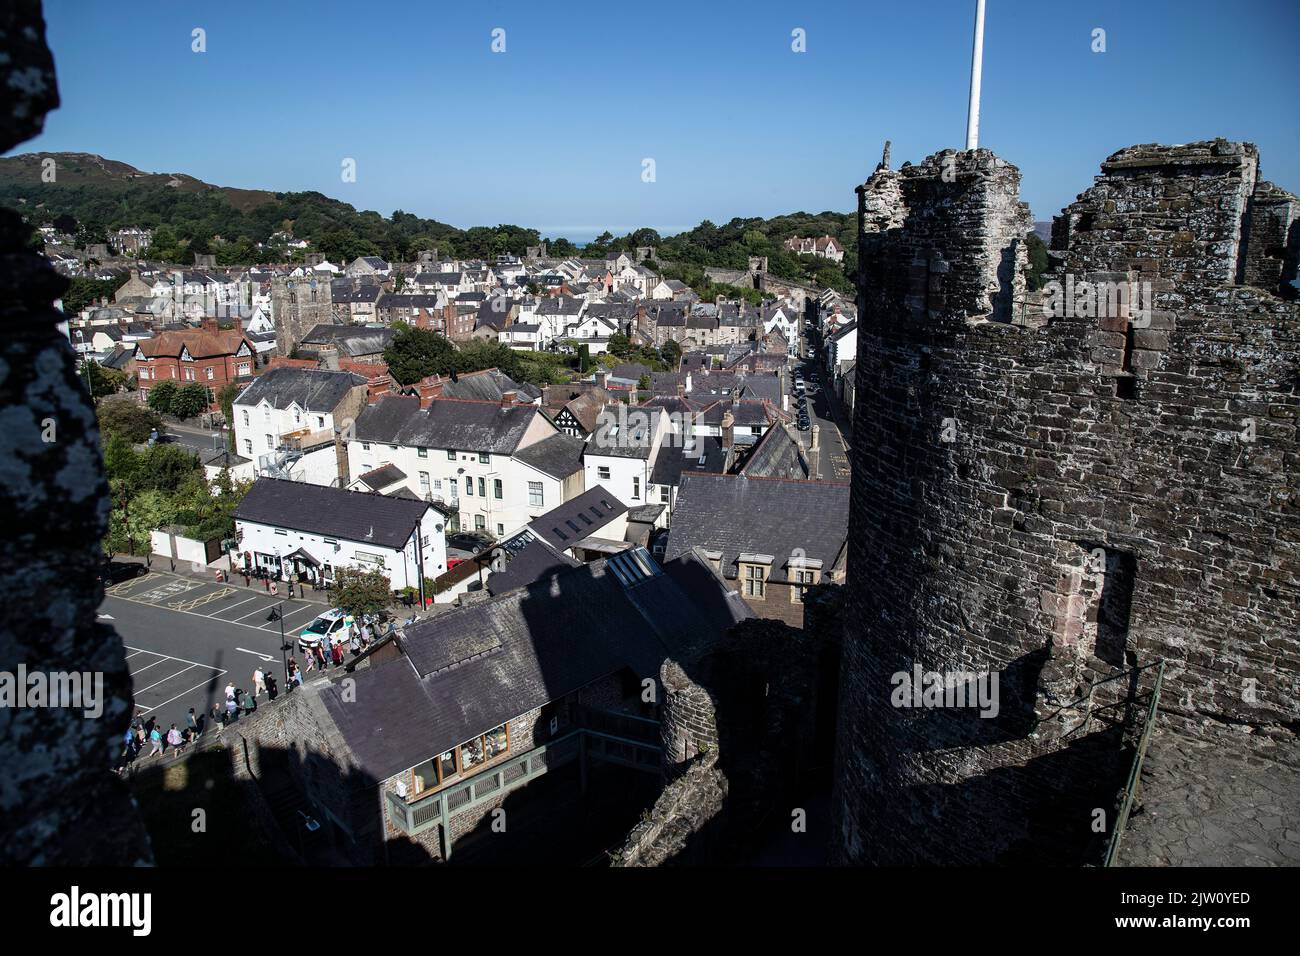 Ein Blick auf die mittelalterliche ummauerte Stadt Conwy, Nord-Wales, von einem Turm des Conwy Castle aus gesehen, der an einem Sommermorgen nach Norden blickt Stockfoto